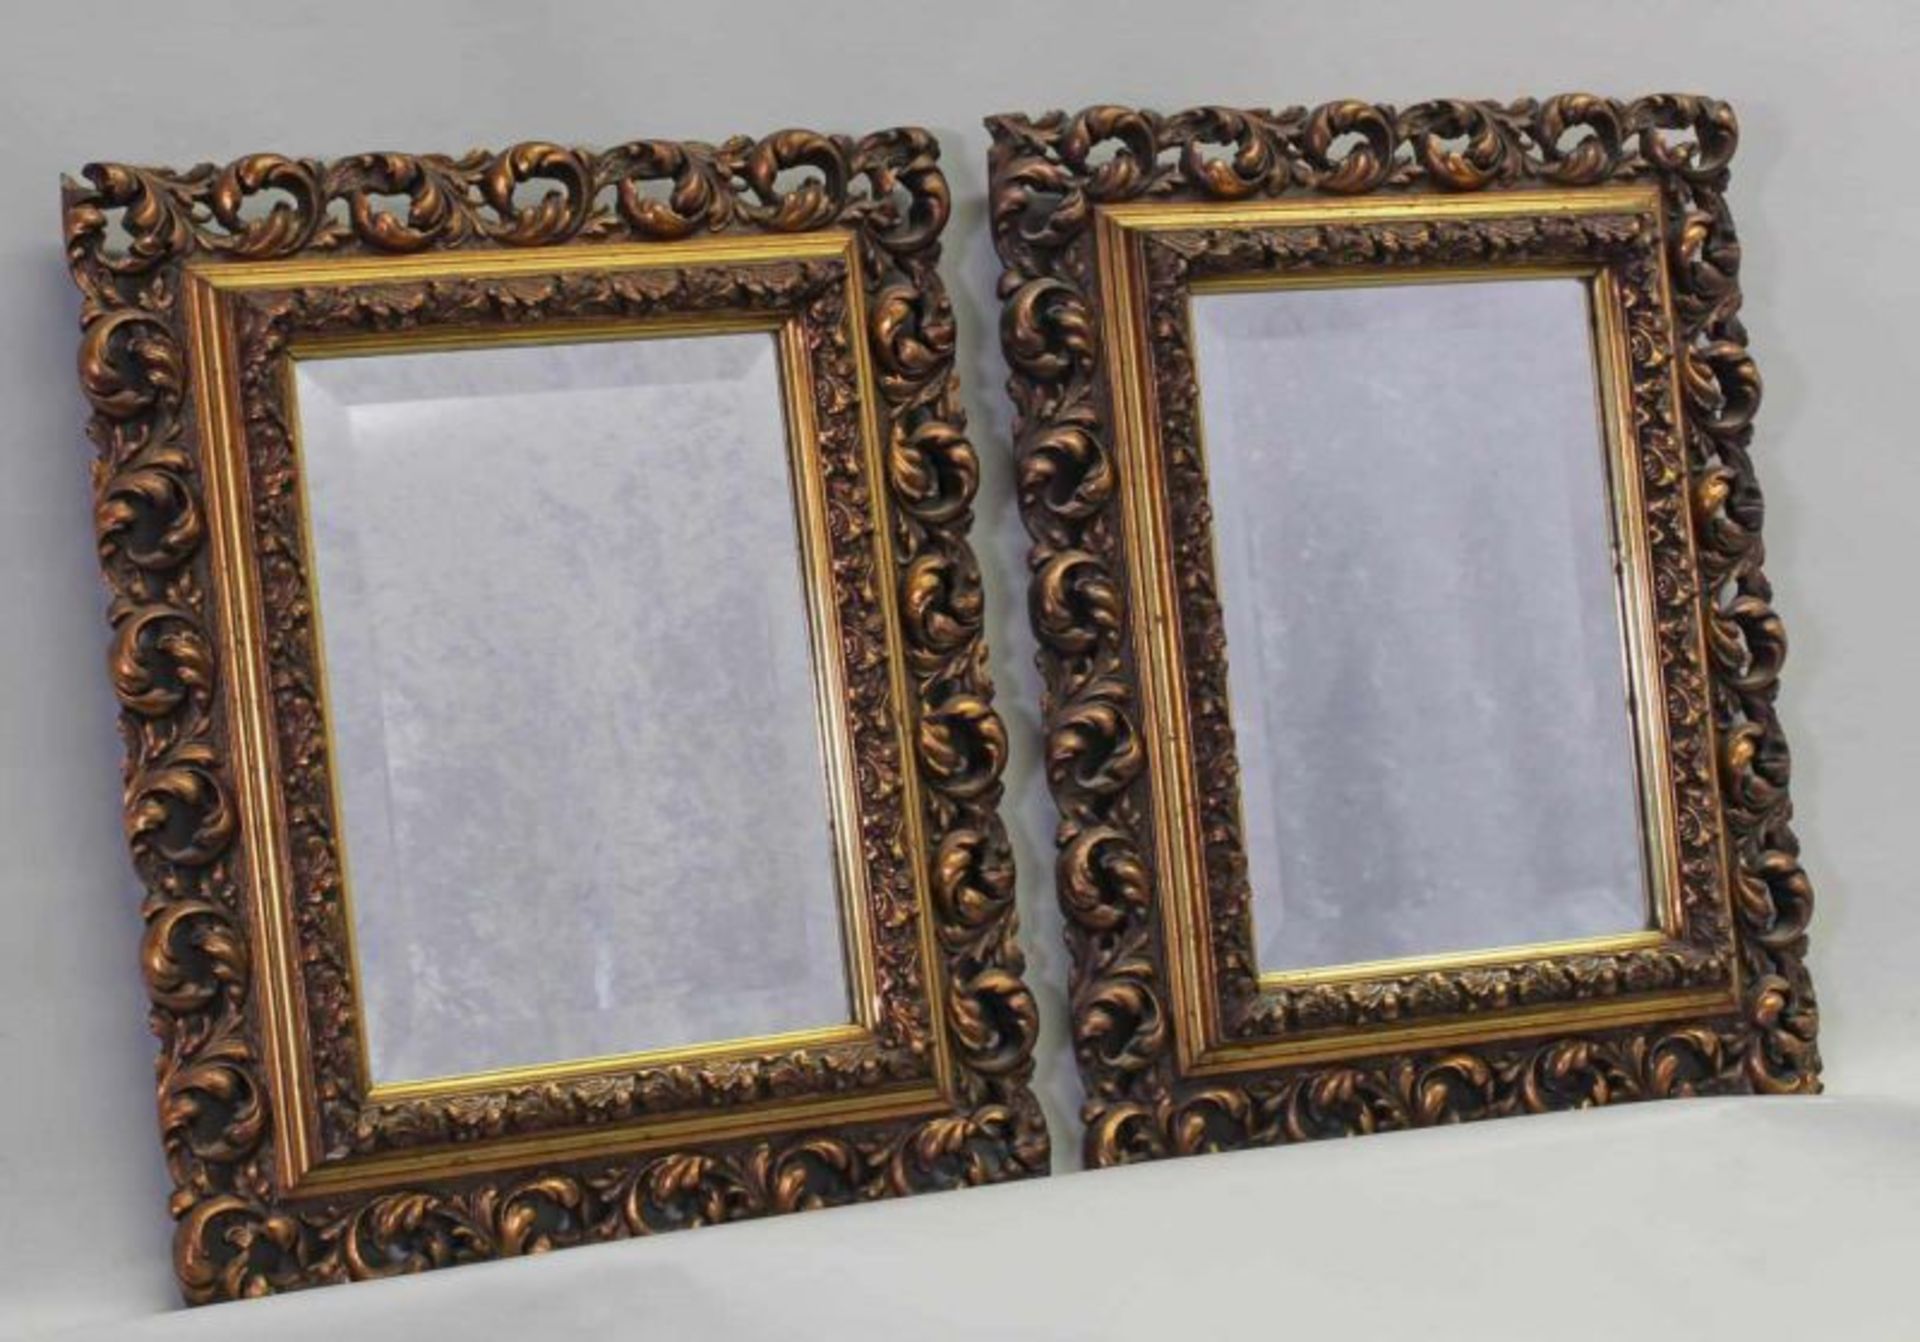 Paar Spiegel, Barockstil, 20. Jh., Holz, goldbronziert, Spiegelglas mit Facette, 52 x 42 cm 20.